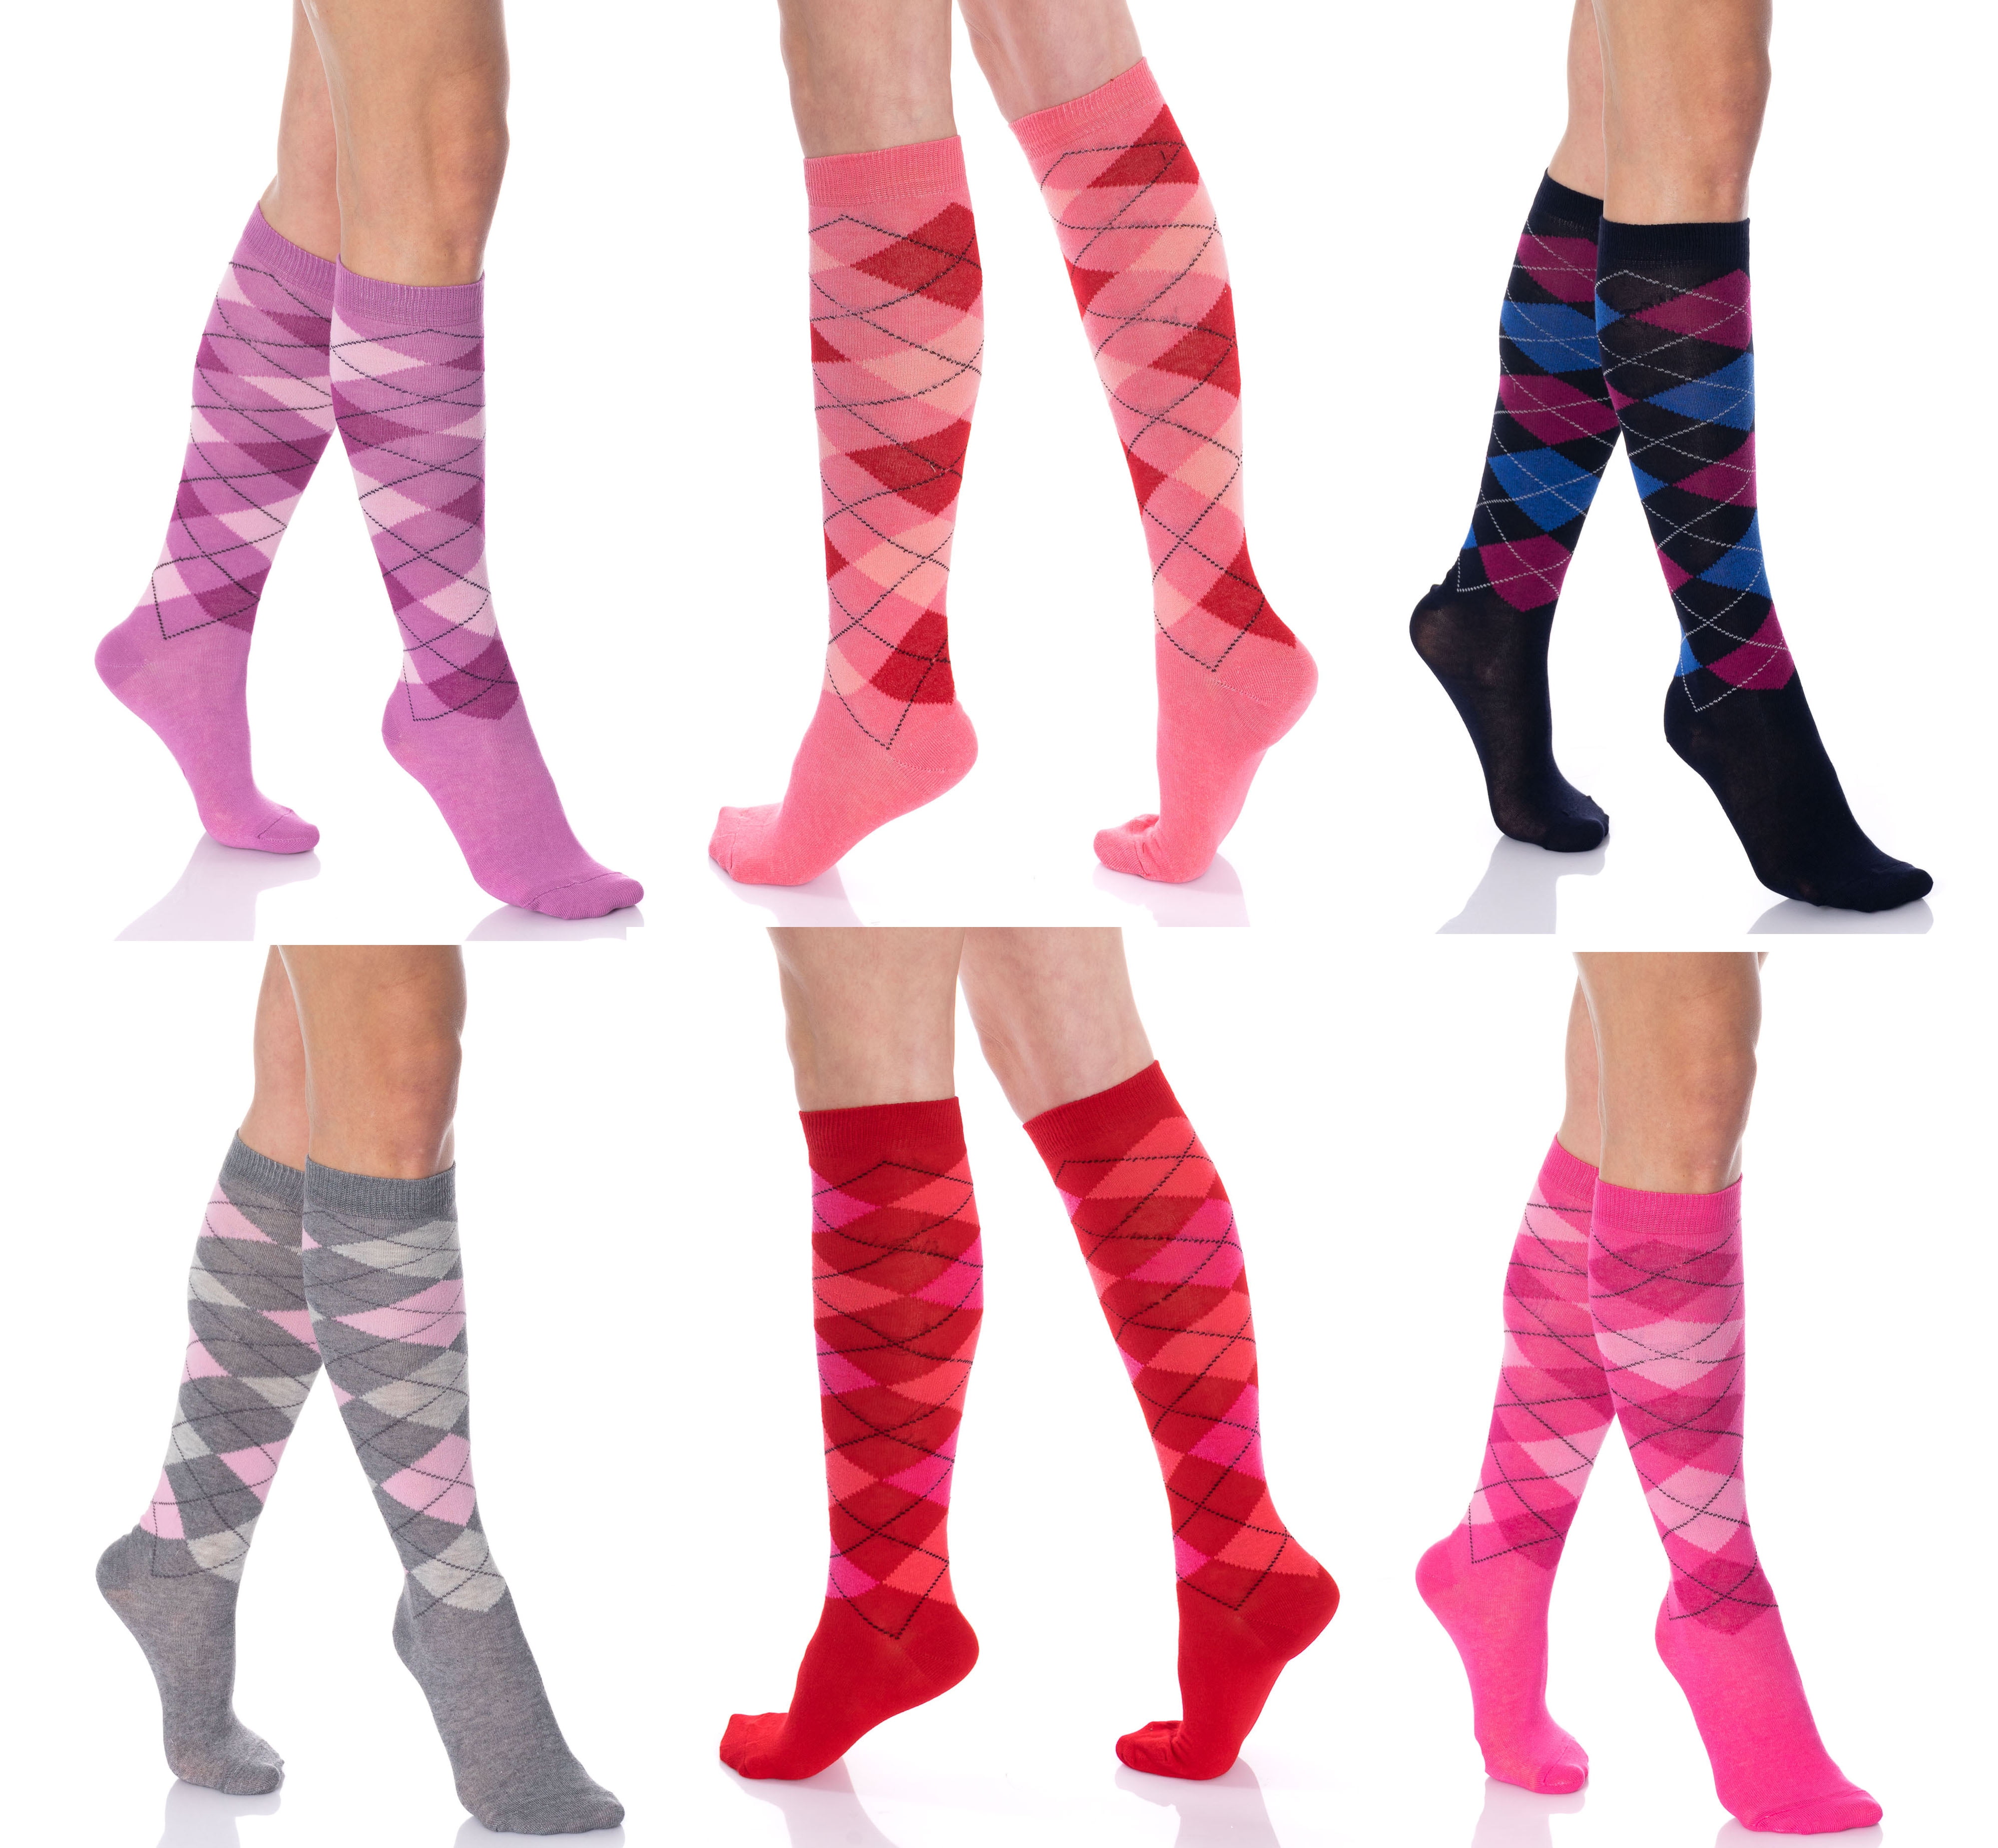 Mysocks Unisex Knee High Argyle Socks Multi Pack 4-7